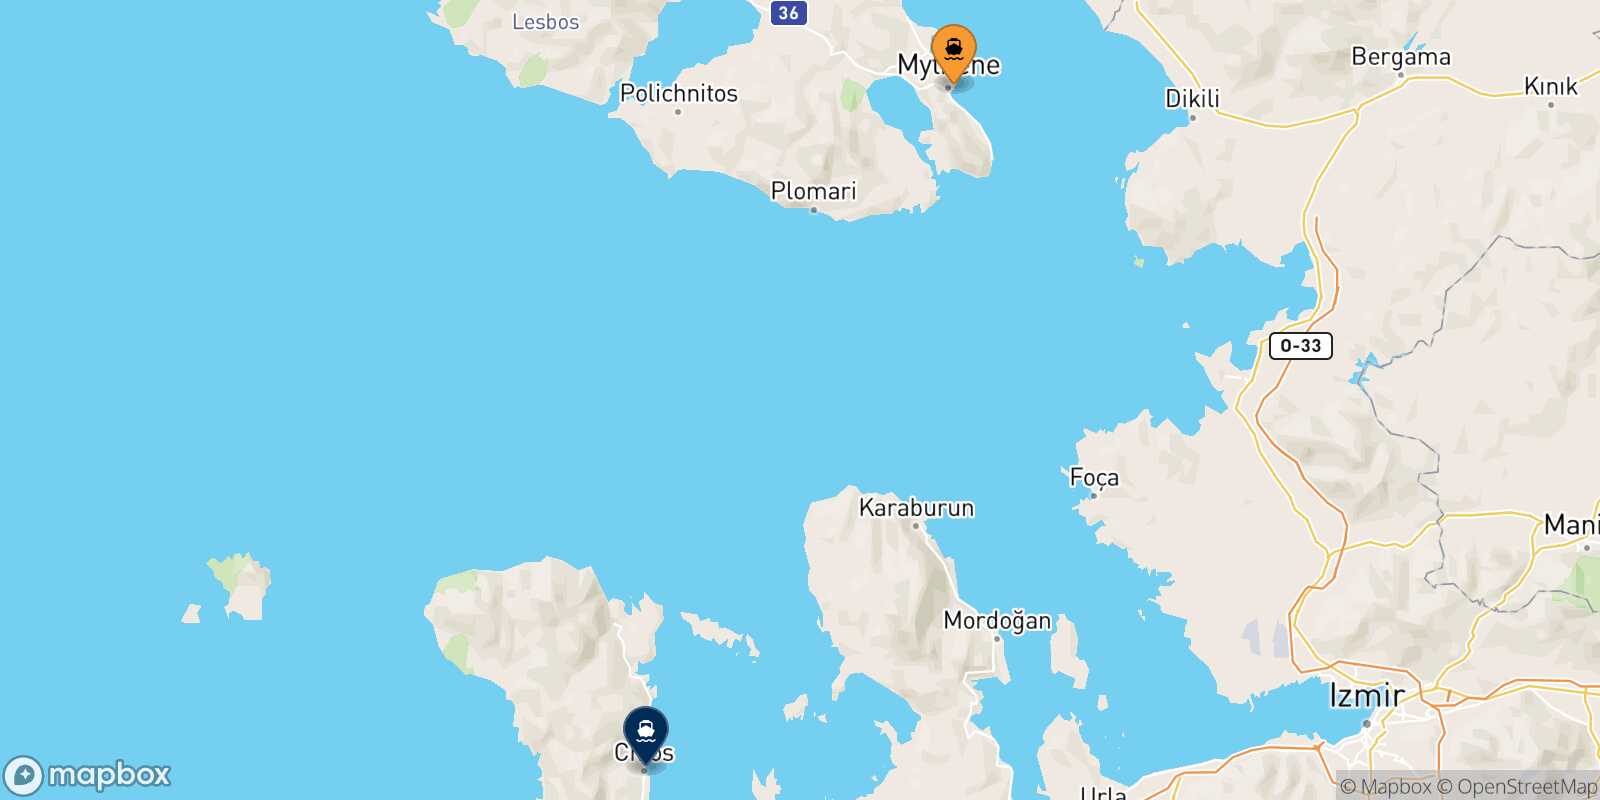 Carte des traverséesMytilene (Lesvos) Chios